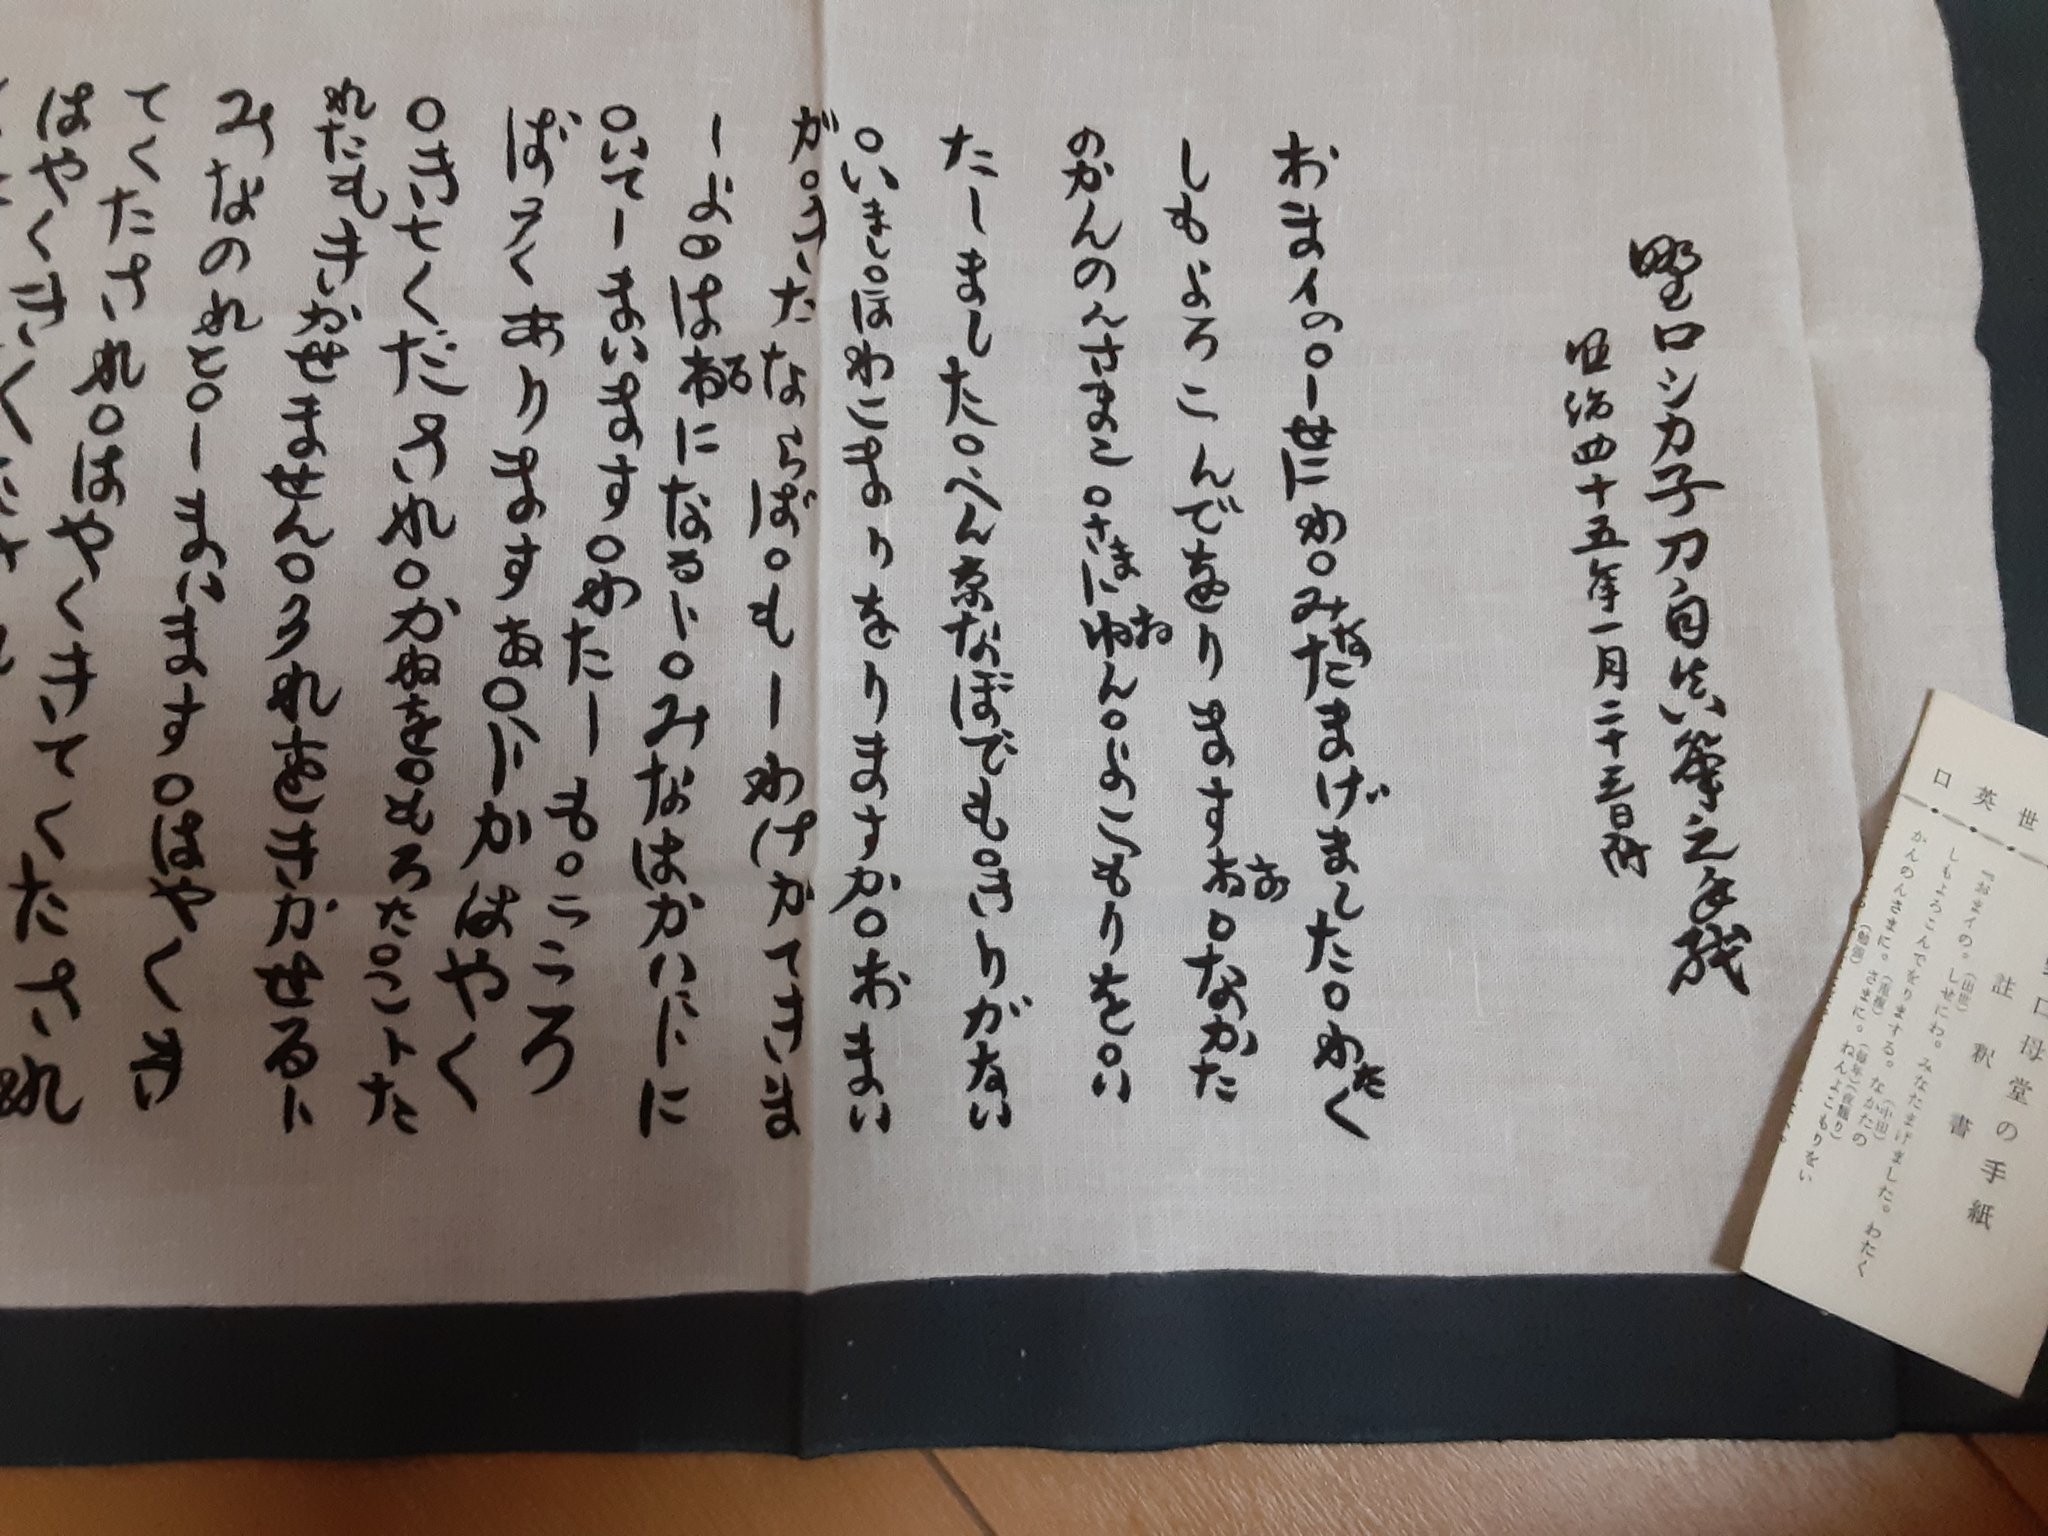 旅するスワローズ男 Dj日本史 Nhkr1 野口英世の母の手紙をモチーフにした手拭い 1981年に野口英世記念館で買い求めました 一生懸命書いた文字に思わず落涙です T Co H57s8ps2rx Twitter